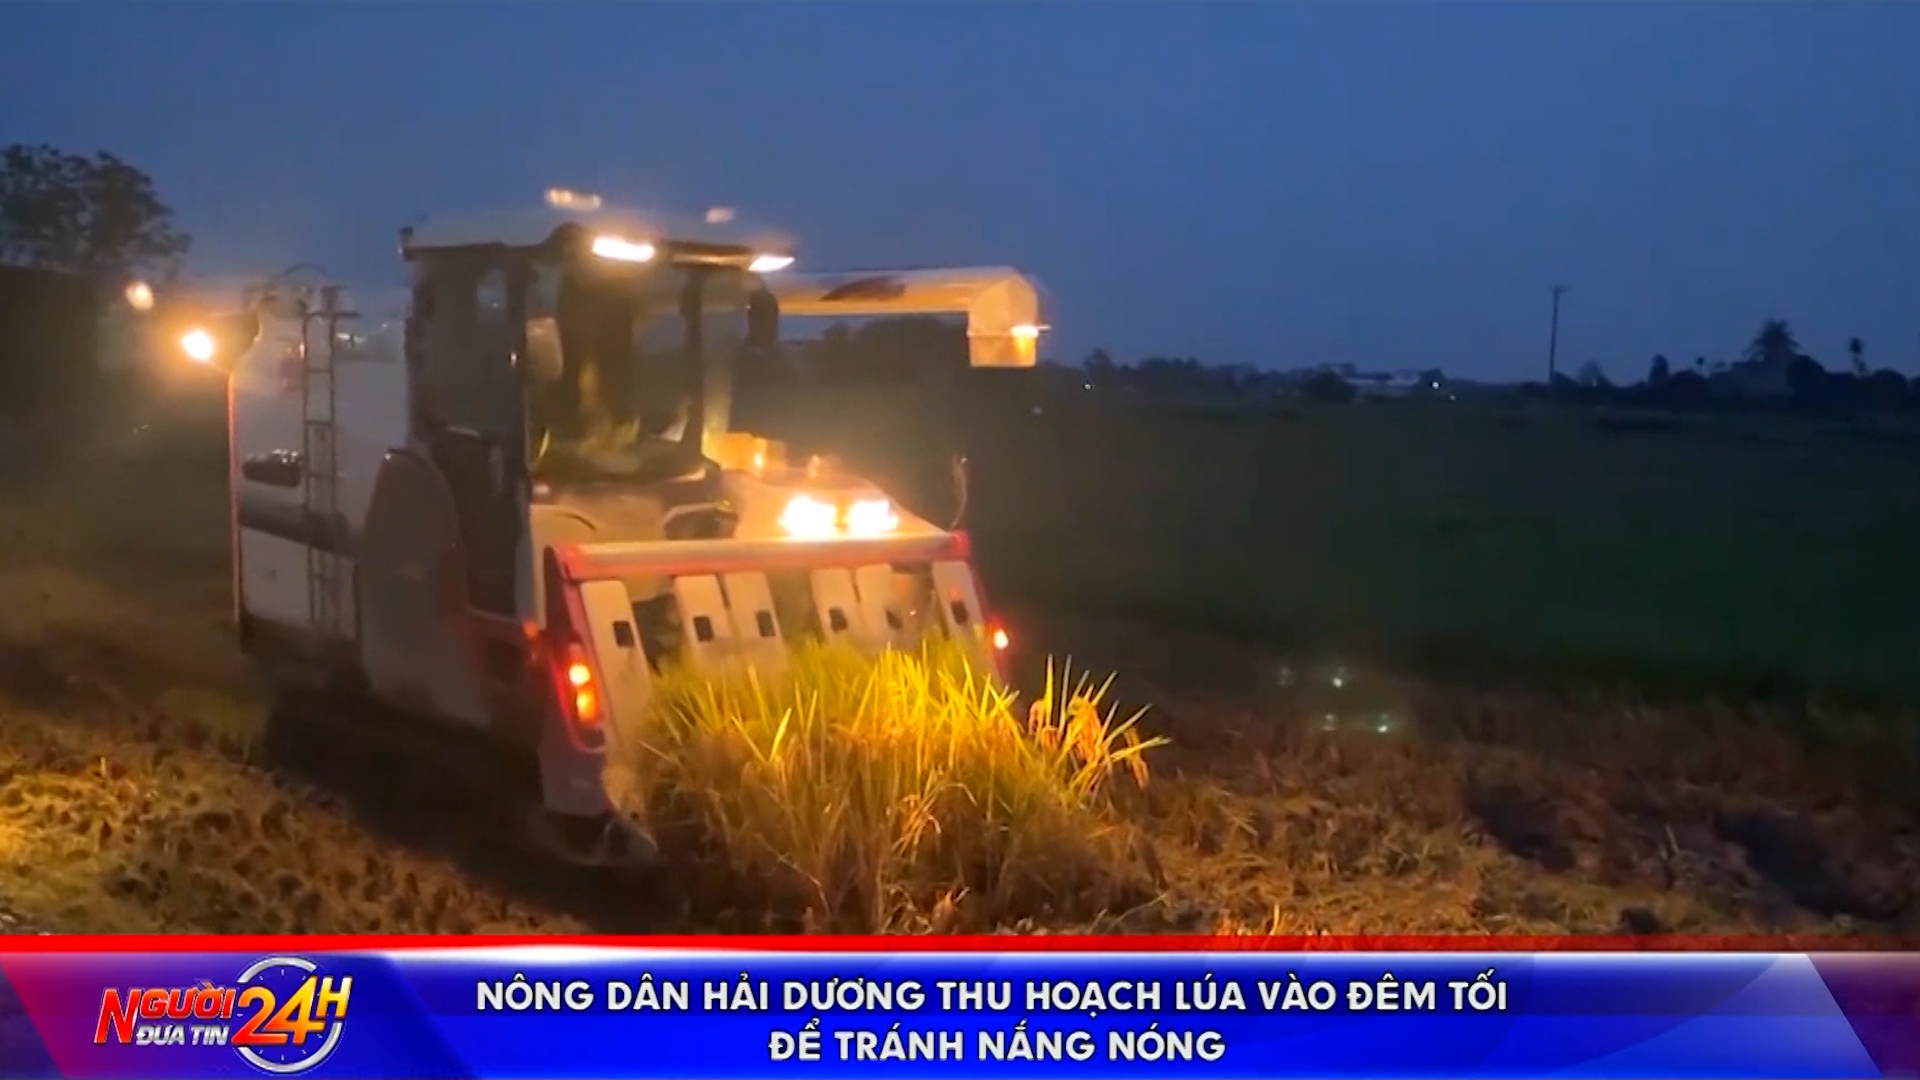 Nông dân Hải Dương thu hoạch lúa vào đêm tối để tránh nắng nóng